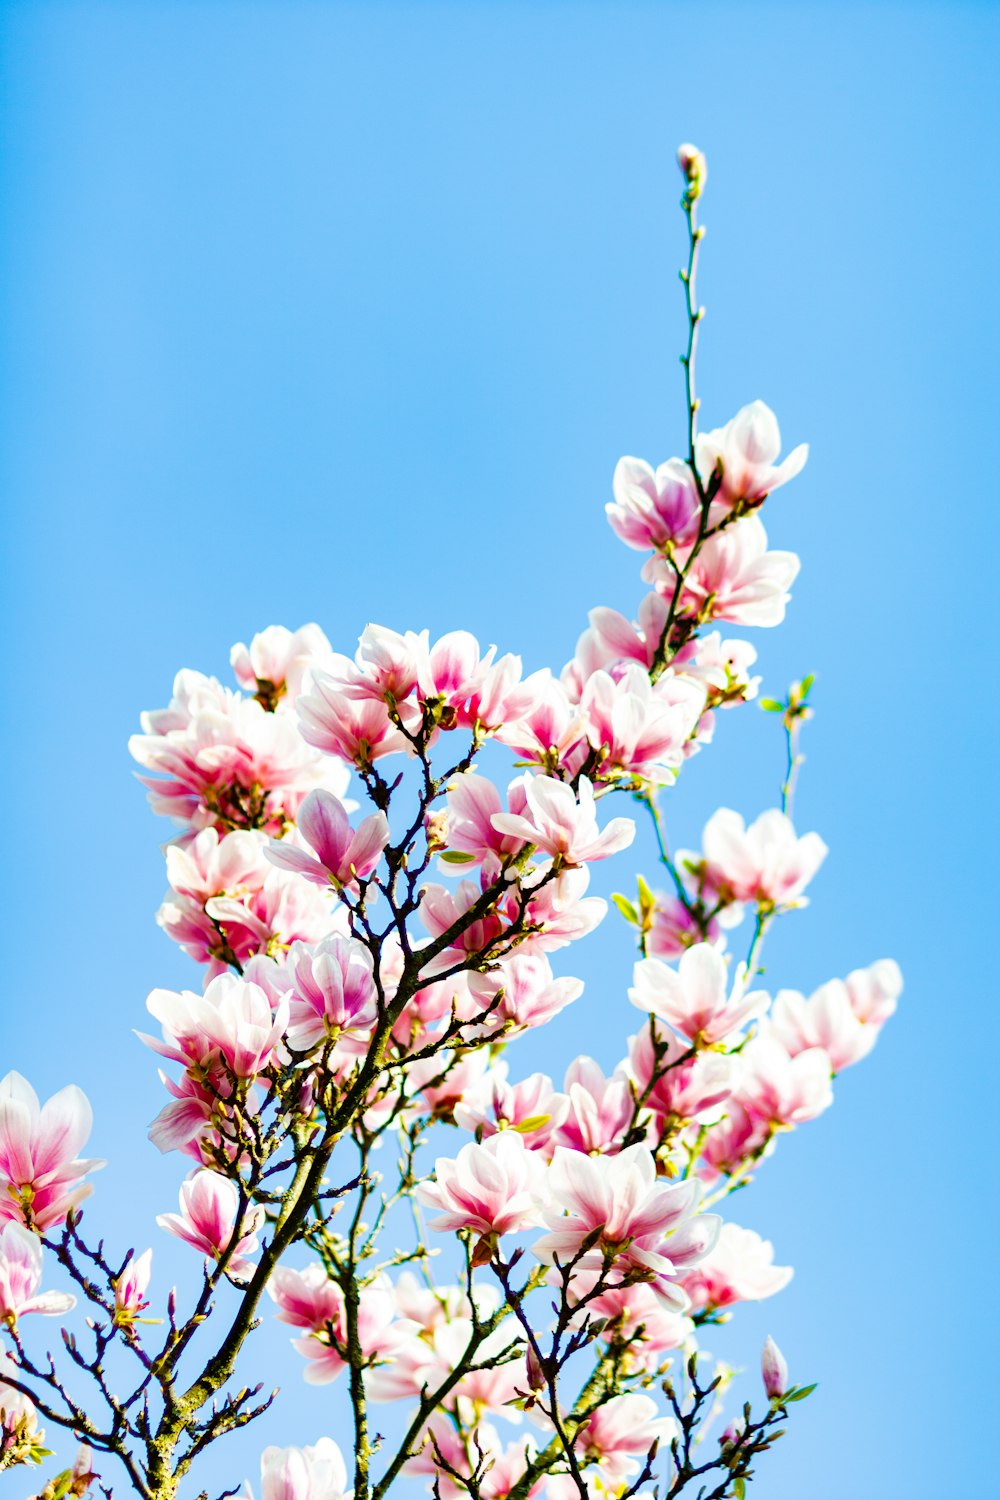 flores de pétalos blancos y rosados